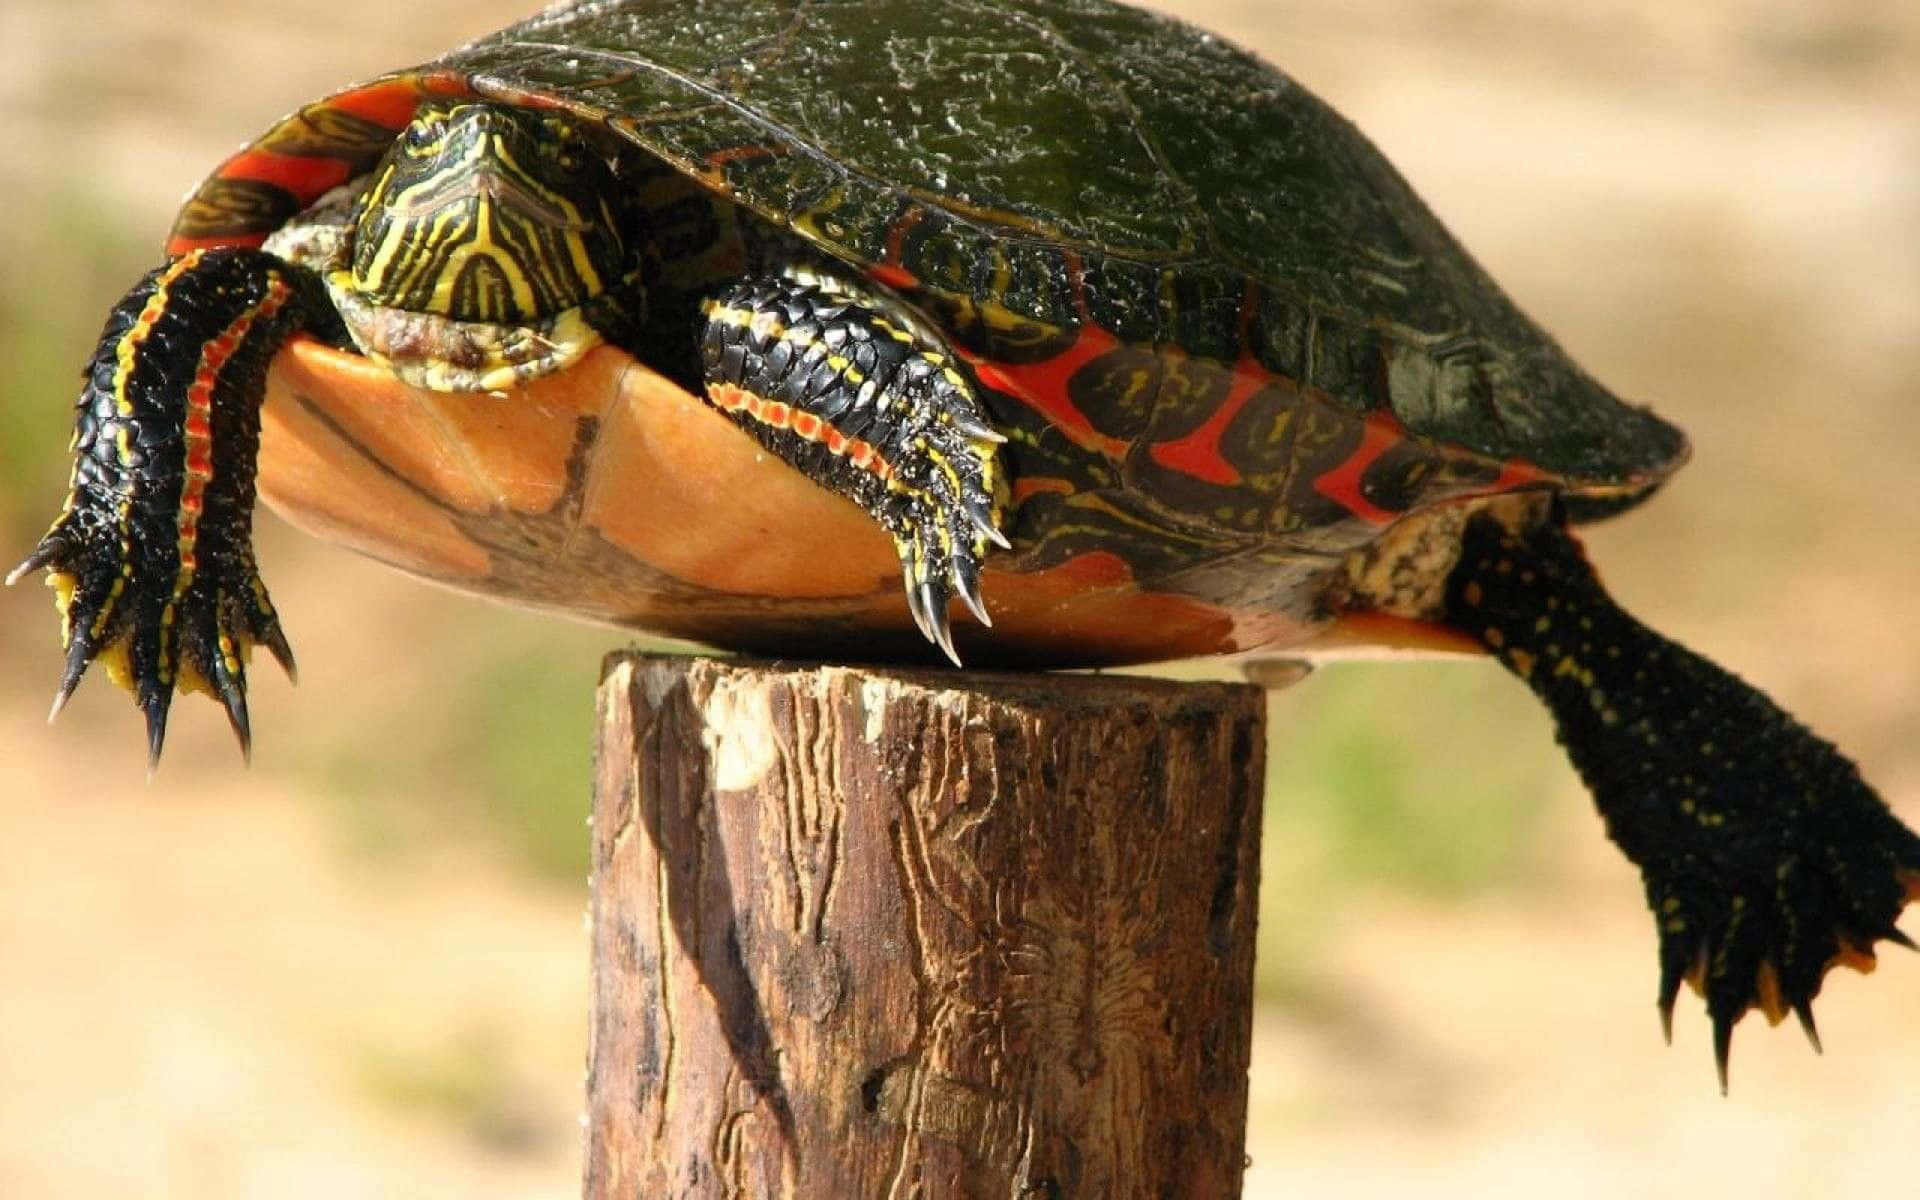 Einerotwangen-schmuckschildkröte Sitzt Oben Auf Einem Holzpfosten.